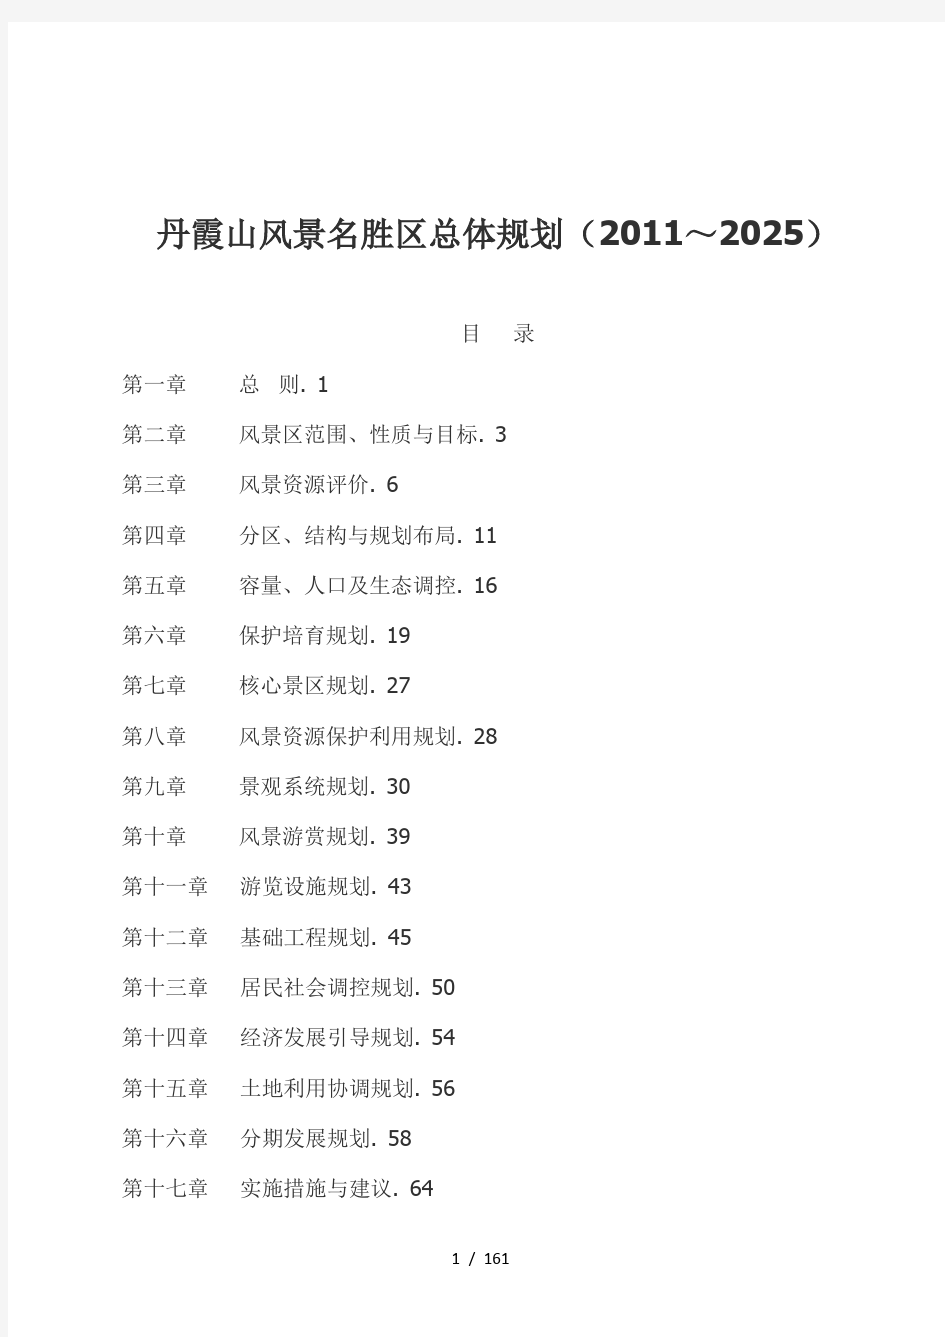 丹霞山风景名胜区总体规划(2011~2025)[0001]